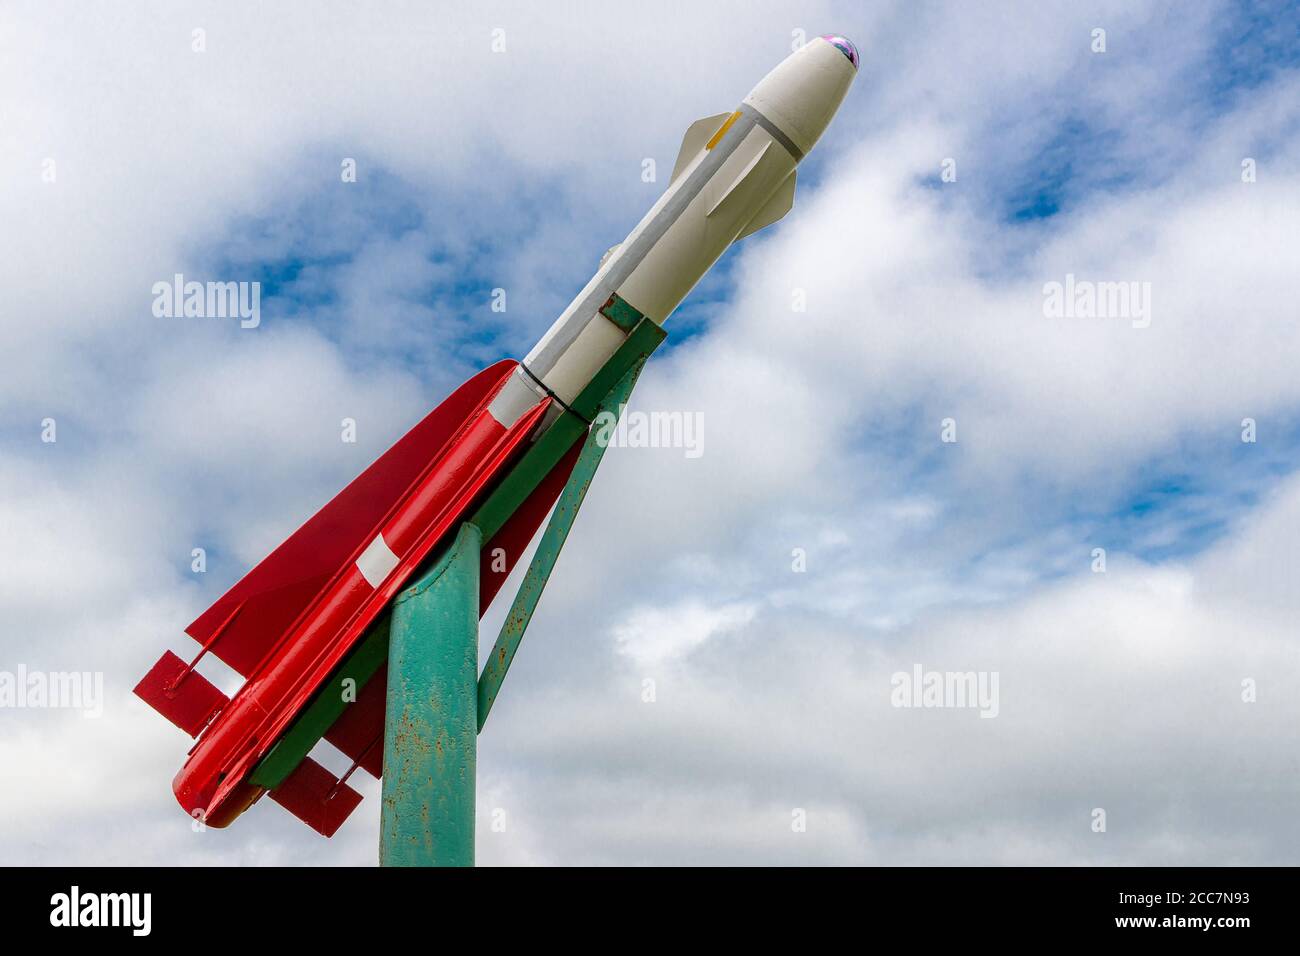 Un petit missile rouge et blanc s'affiche. Il est monté sur un stand cupidité et pointe vers le ciel. Ciel nuageux avec quelques espaces ouverts. Banque D'Images